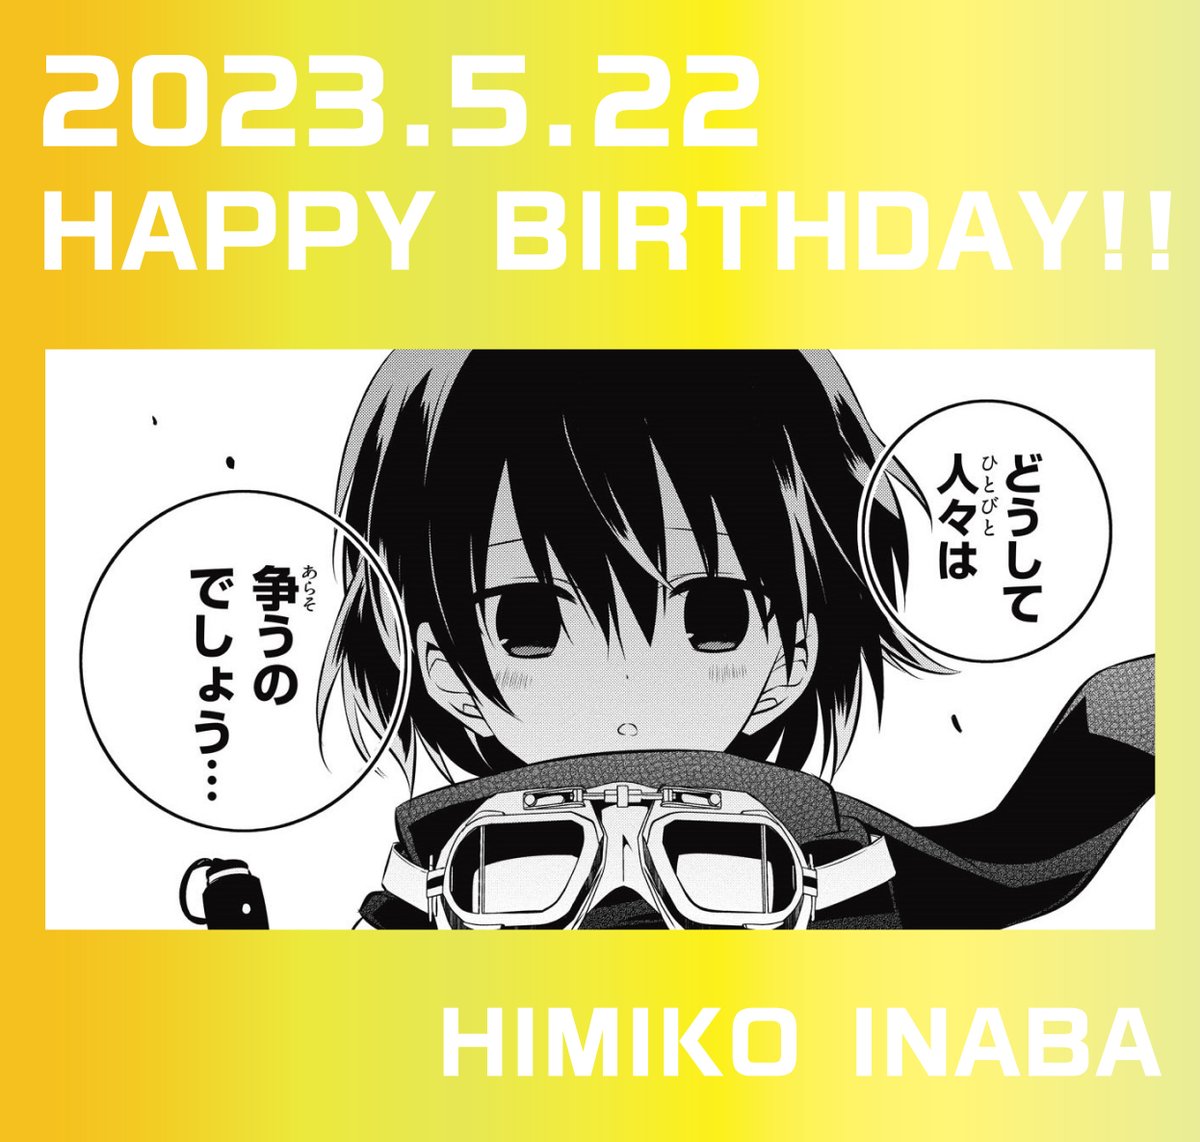 / 🎉HAPPY BIRTHDAY!!🎉 2023.05.22 本日はヒミコのお誕生日です! \ みなさんはヒミコのどんなところがお好きですか? 担当はほんわかした彼女の笑顔が特に魅力的だと思います! おめでとうございます!🎂🎉✨